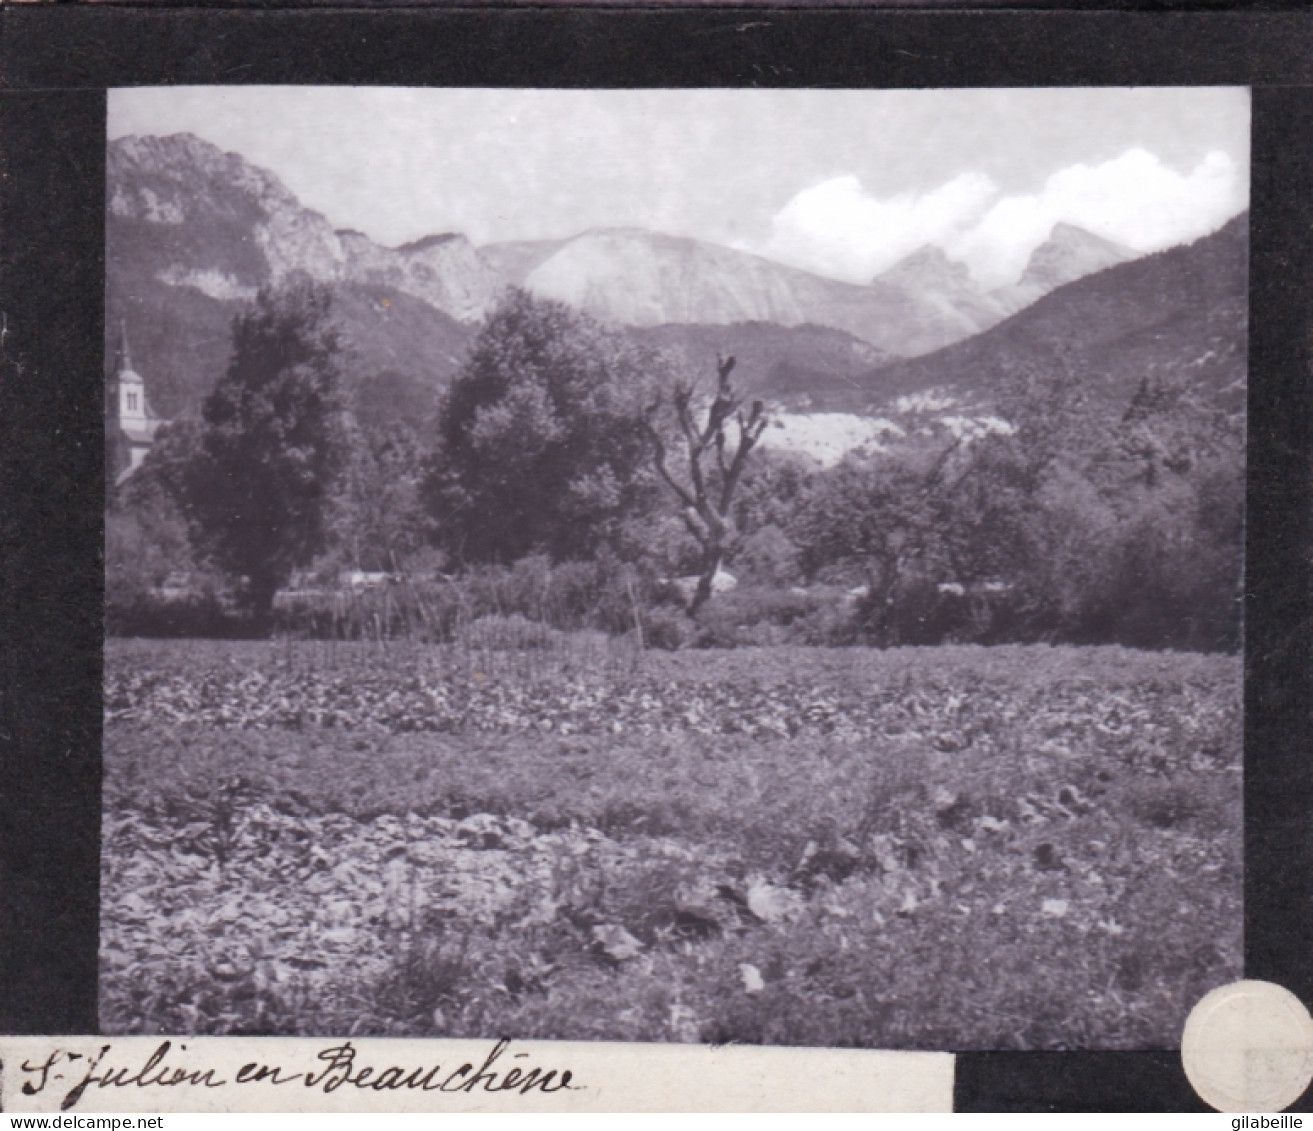 PLAQUE DE VERRE -  Photo - 05 - Hautes Alpes - SAINT JULIEN En BEAUCHENE-  Année 1890 - Glass Slides